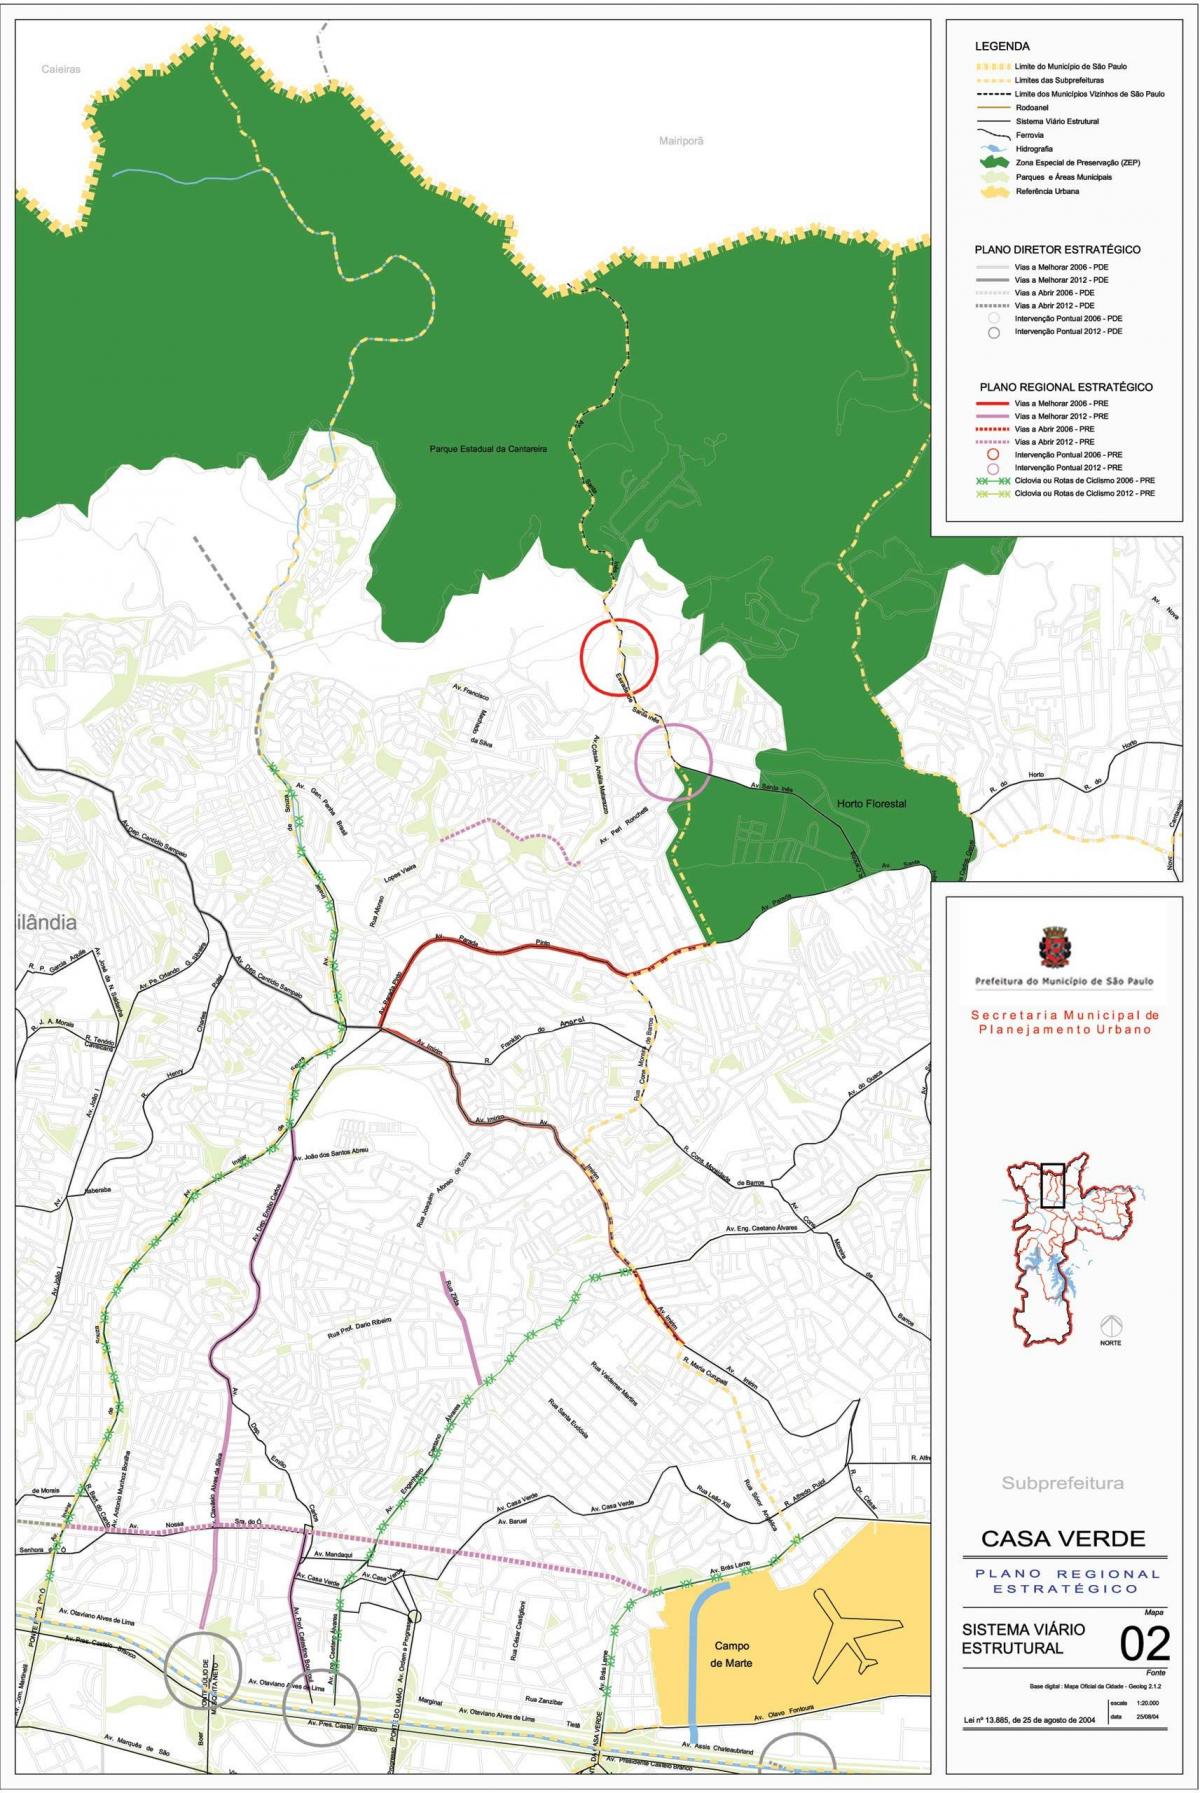 Map of Casa Verde São Paulo - Roads